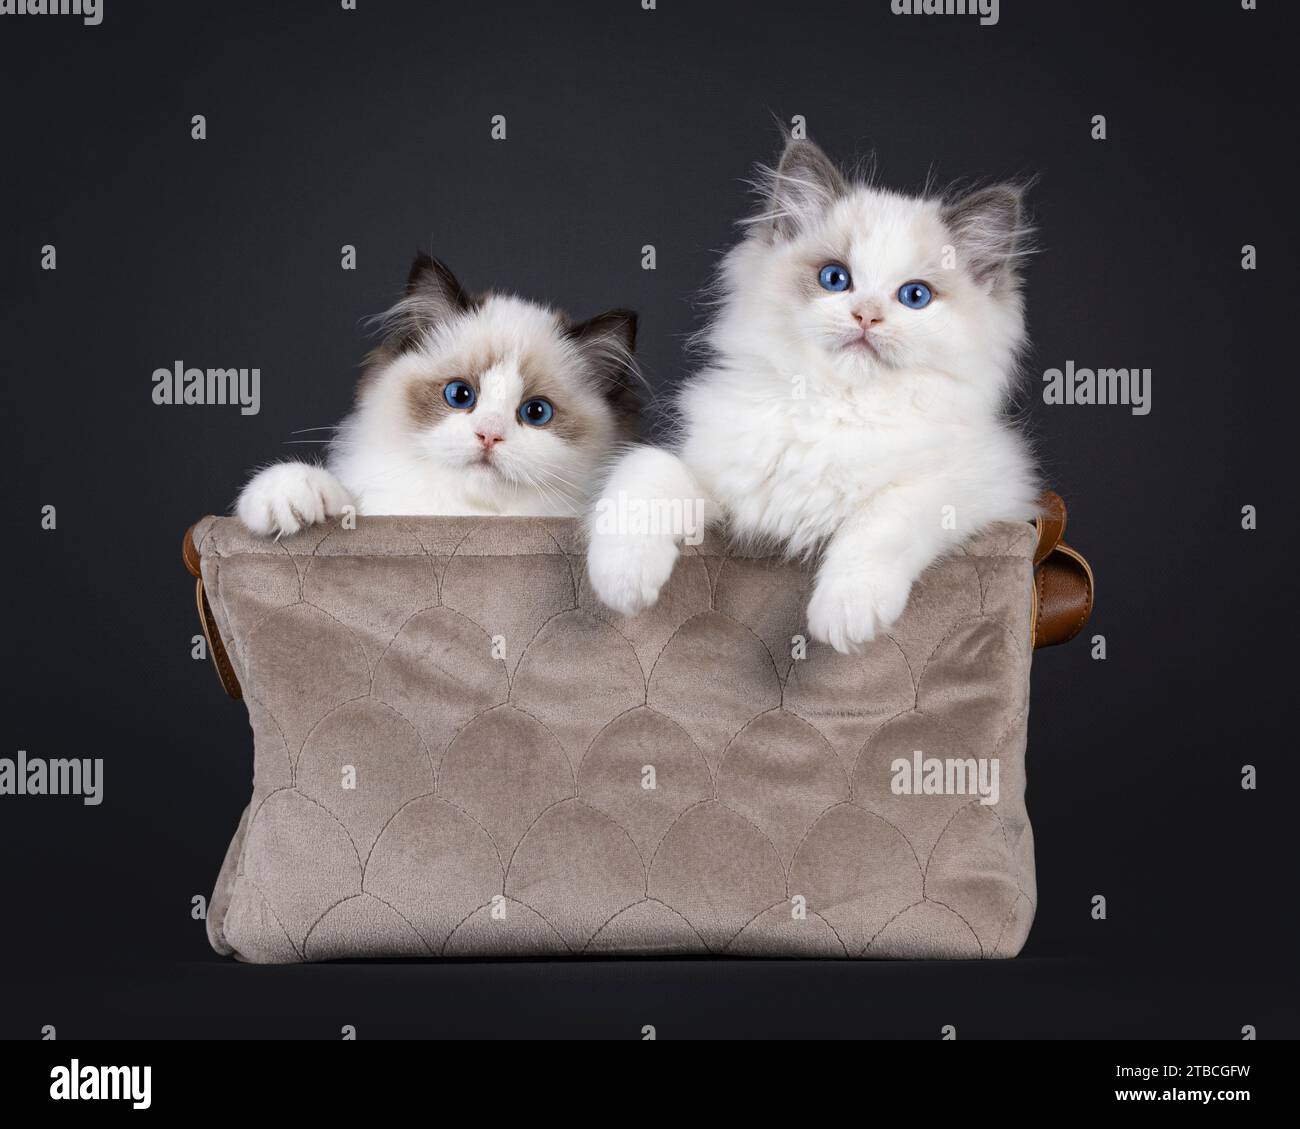 2 adorable phoque et chatons chat Ragdoll bicolore bleu, assis dans un panier en velours brun. Regardant vers la caméra avec les yeux bleus. Isolé sur un dos noir Banque D'Images